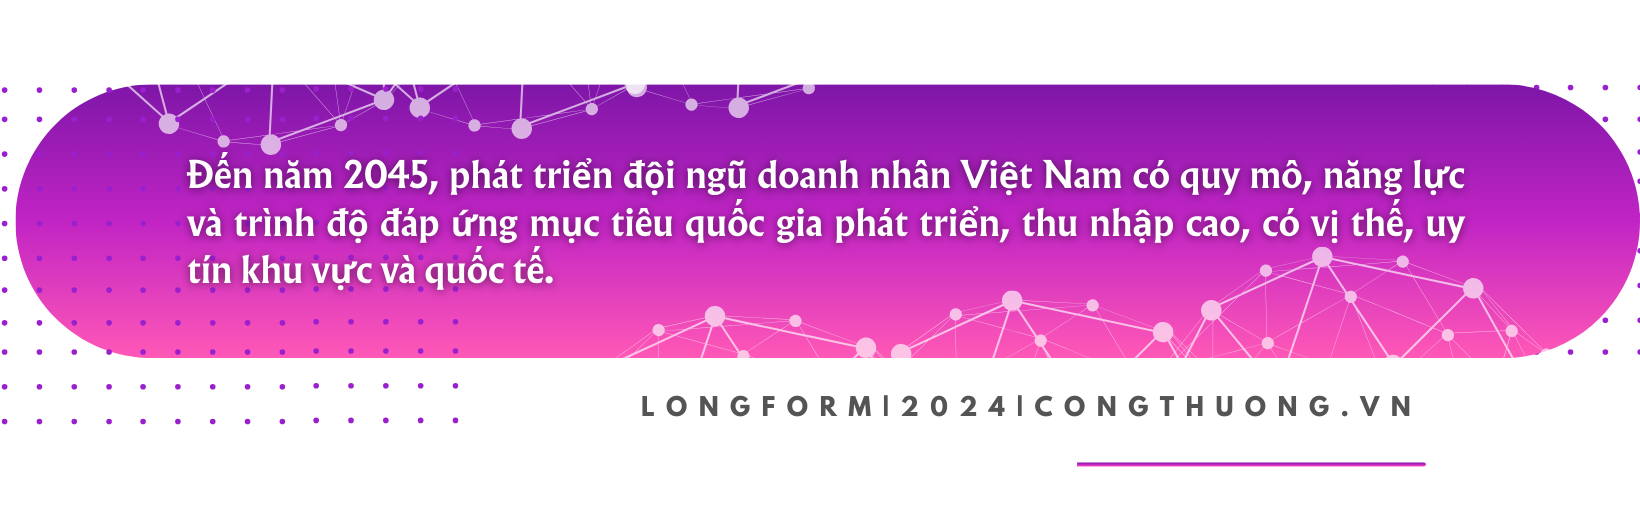 Longform | Bài 1:  Tư tưởng Hồ Chí Minh và tầm quan trọng của doanh nghiệp